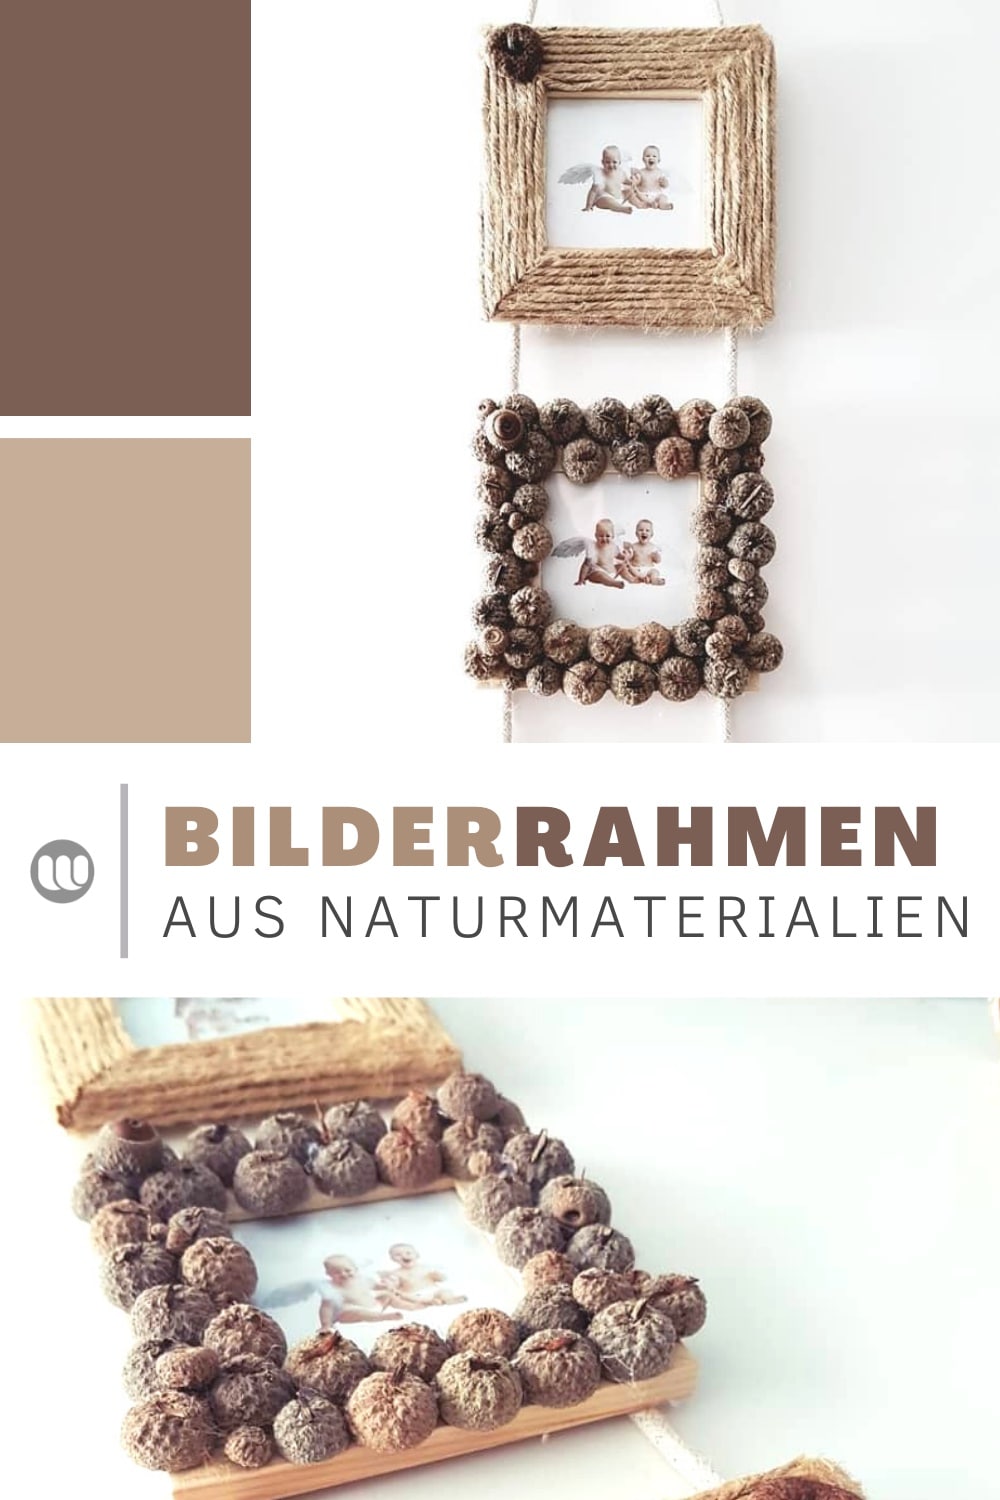 Bilderrahmen dekorieren & Basteln mit Naturmaterialien: DIY Bilderrahmen mit Holzscheiben, Eicheln und Jutegarm